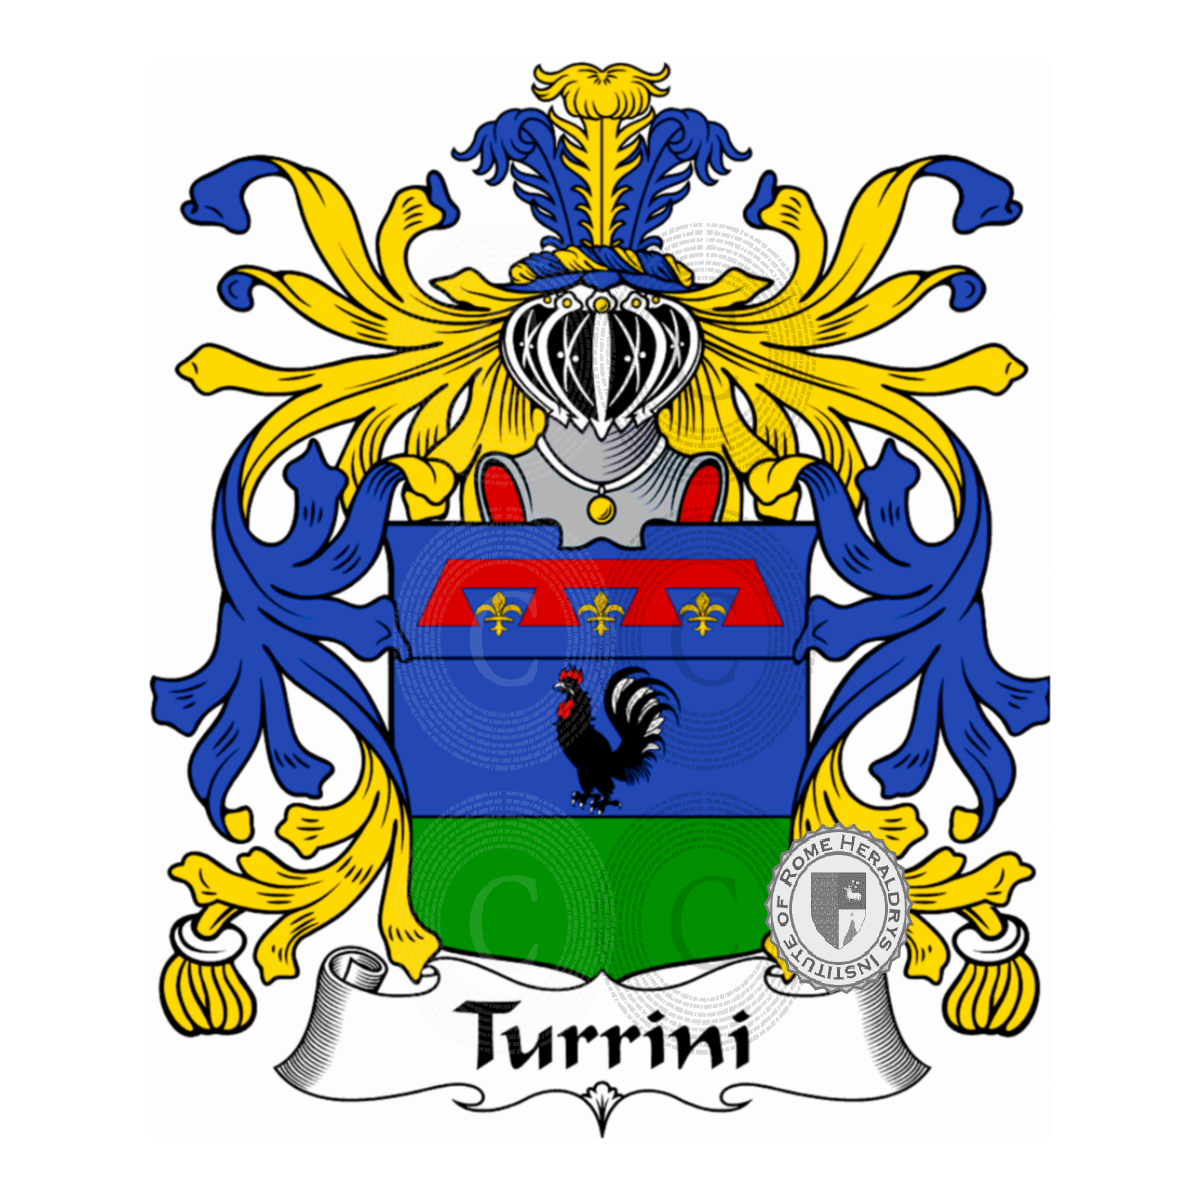 Escudo de la familiaTurrini, Ardenghi,De Thurin,Turin,Turina,Turini,Turino